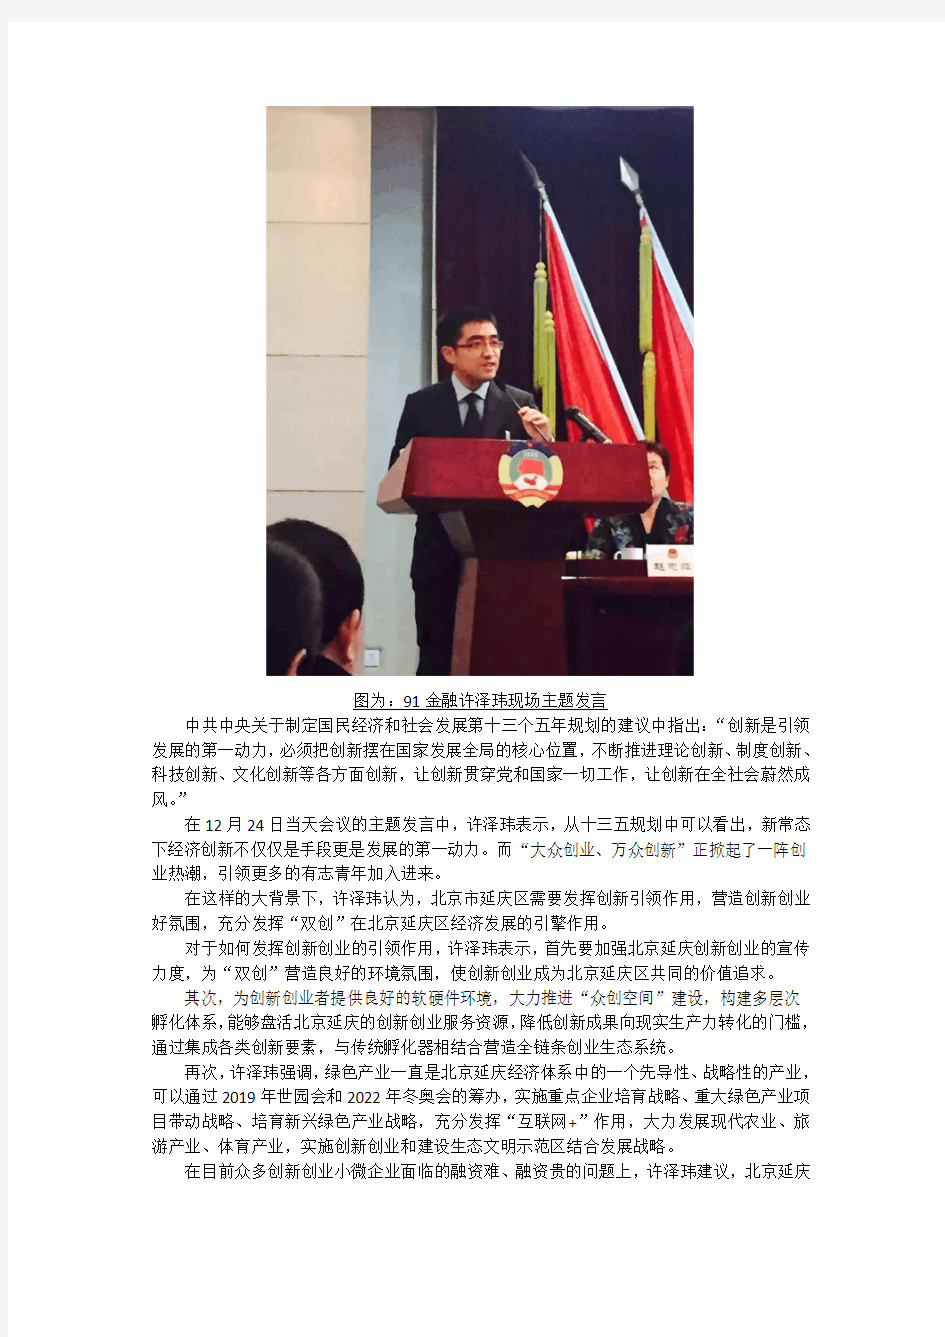 91金融许泽玮北京延庆政协会议建言 以“双创”打造经济发展新引擎